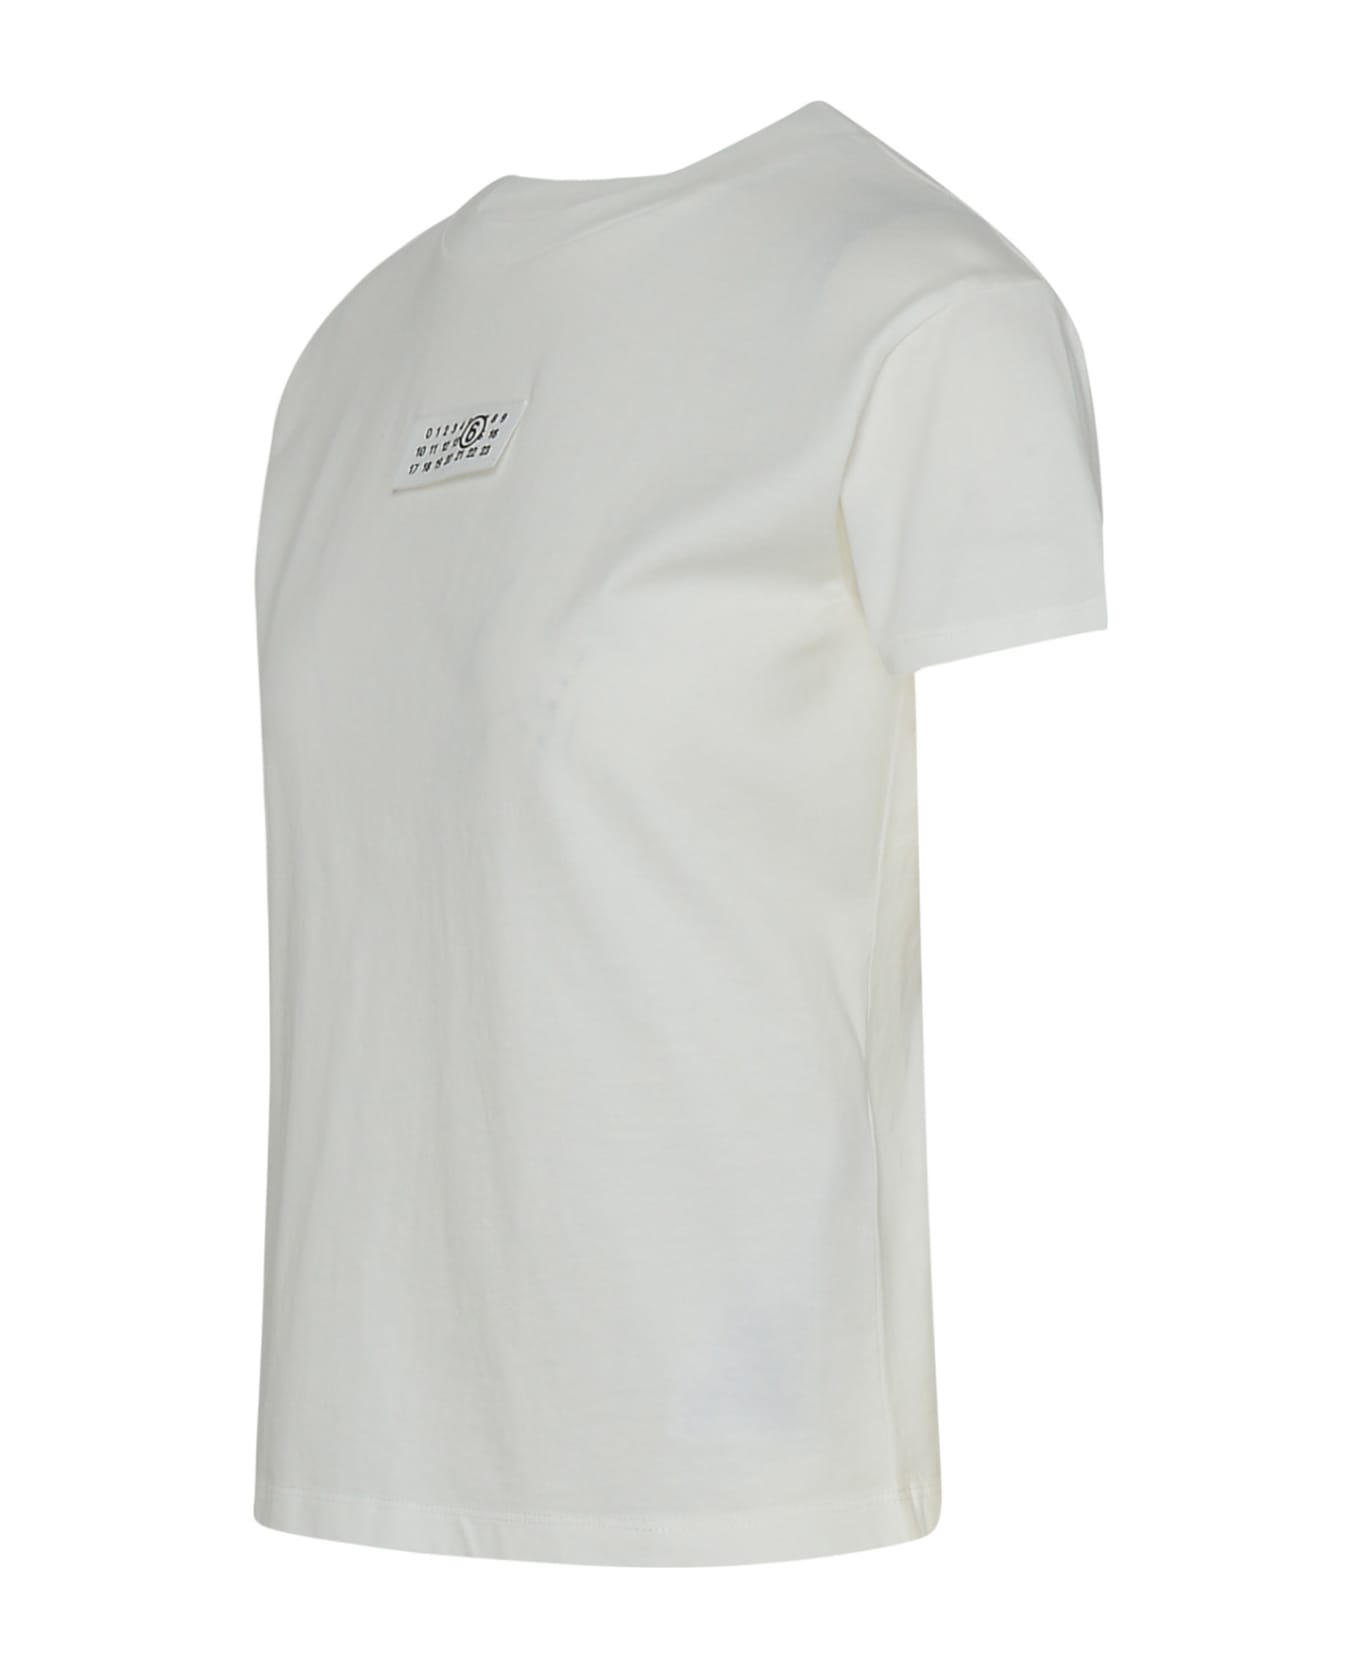 MM6 Maison Margiela White Cotton T-shirt - Non definito